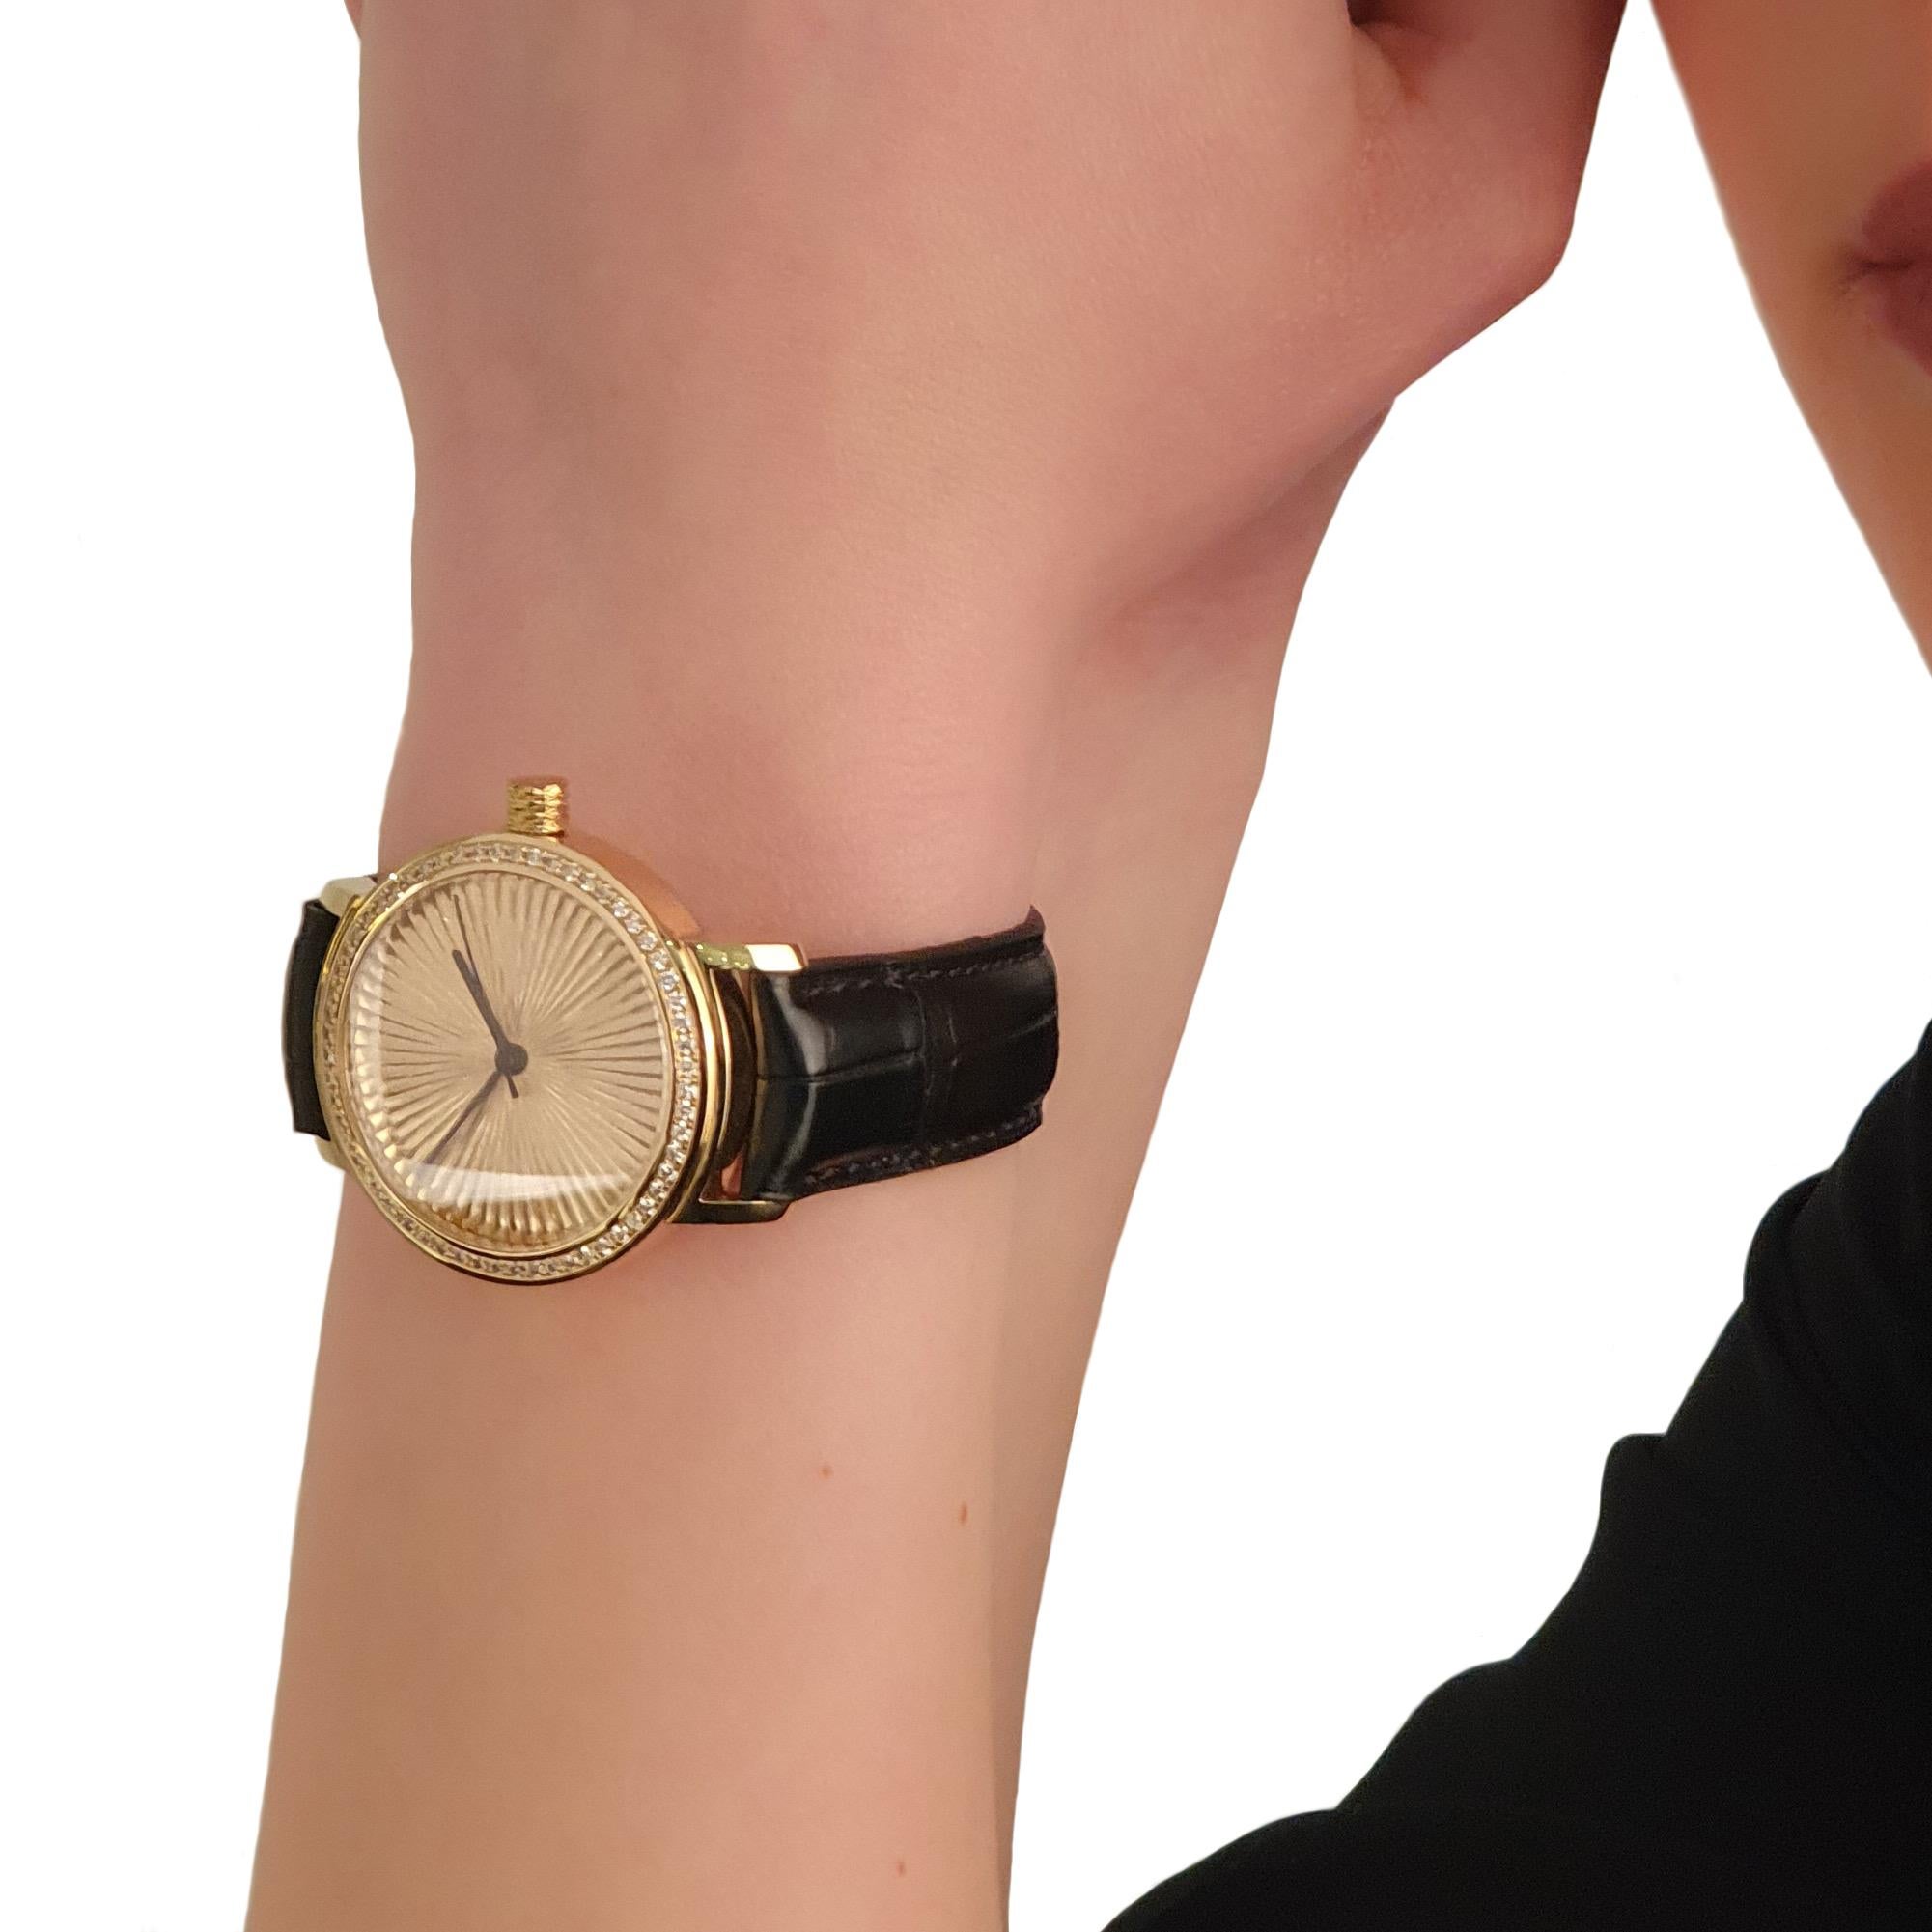 Nº2 mit 60 Diamanten im Brillantschliff Gelbgold-Armbanduhr  Cober-Schmuck

Dies ist eine Cober Nº2 - eine Uhr in limitierter Auflage.
Die Cober Nº2 - eine Uhr in limitierter Auflage, die ein Zeichen setzen soll. Dieser exquisite Zeitmesser zeichnet